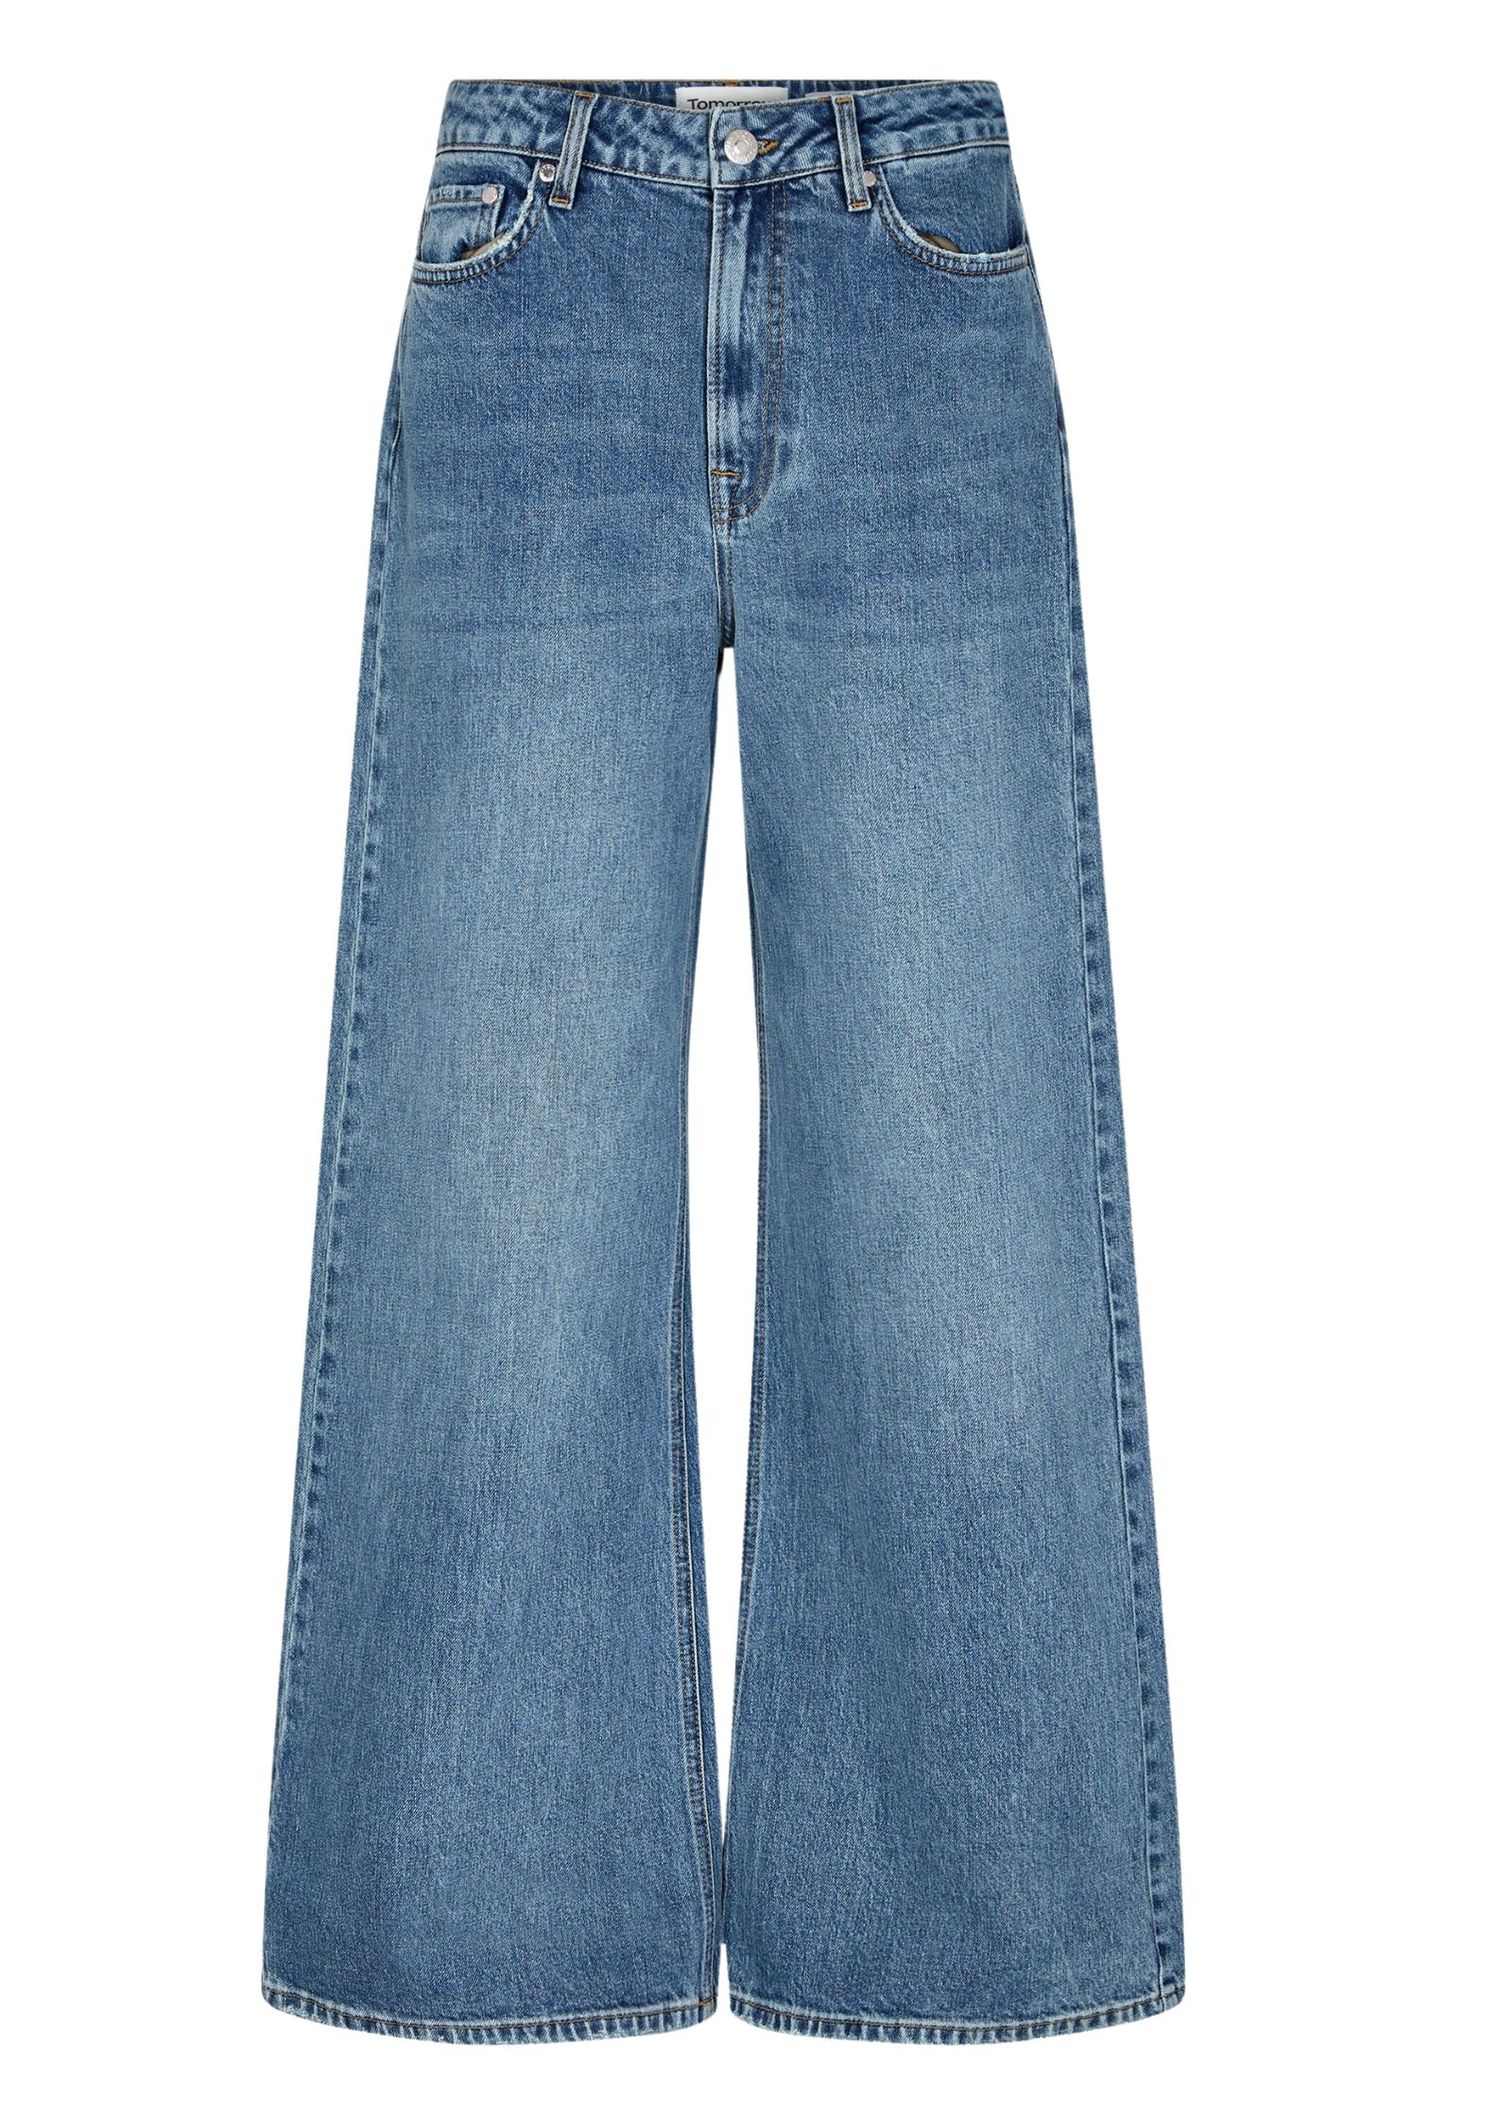 The best jeans from Scandinavian brands in 2023 - Vogue Scandinavia